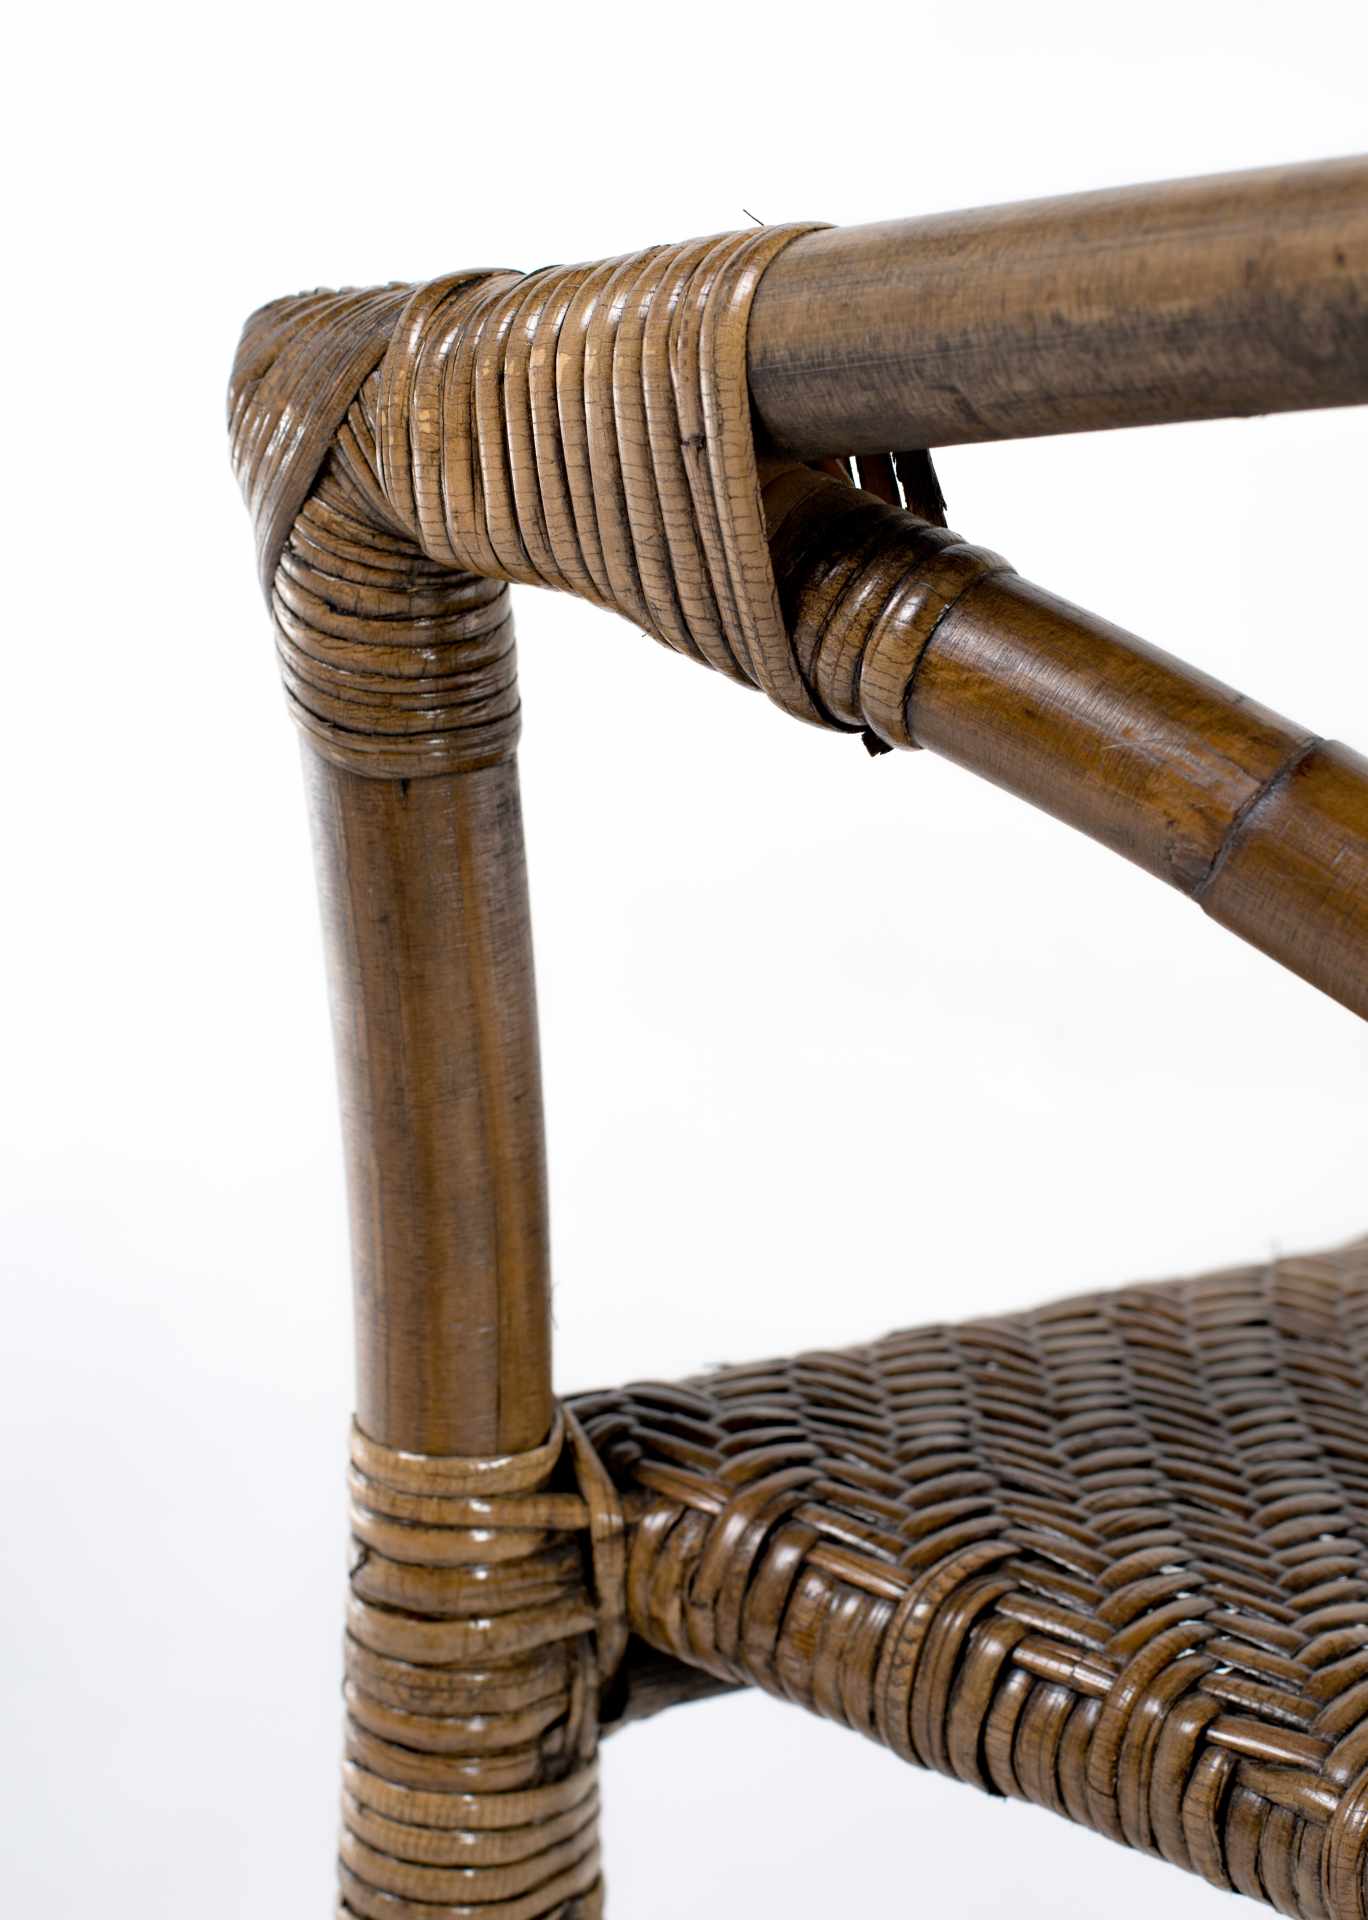 Der Armlehnstuhl Jester überzeugt mit seinem Landhaus Stil. Gefertigt wurde er aus Rattan, welches einen braunen Farbton besitzt. Der Stuhl verfügt über eine Armlehne und ist im 2er-Set erhältlich. Die Sitzhöhe beträgt beträgt 46 cm.